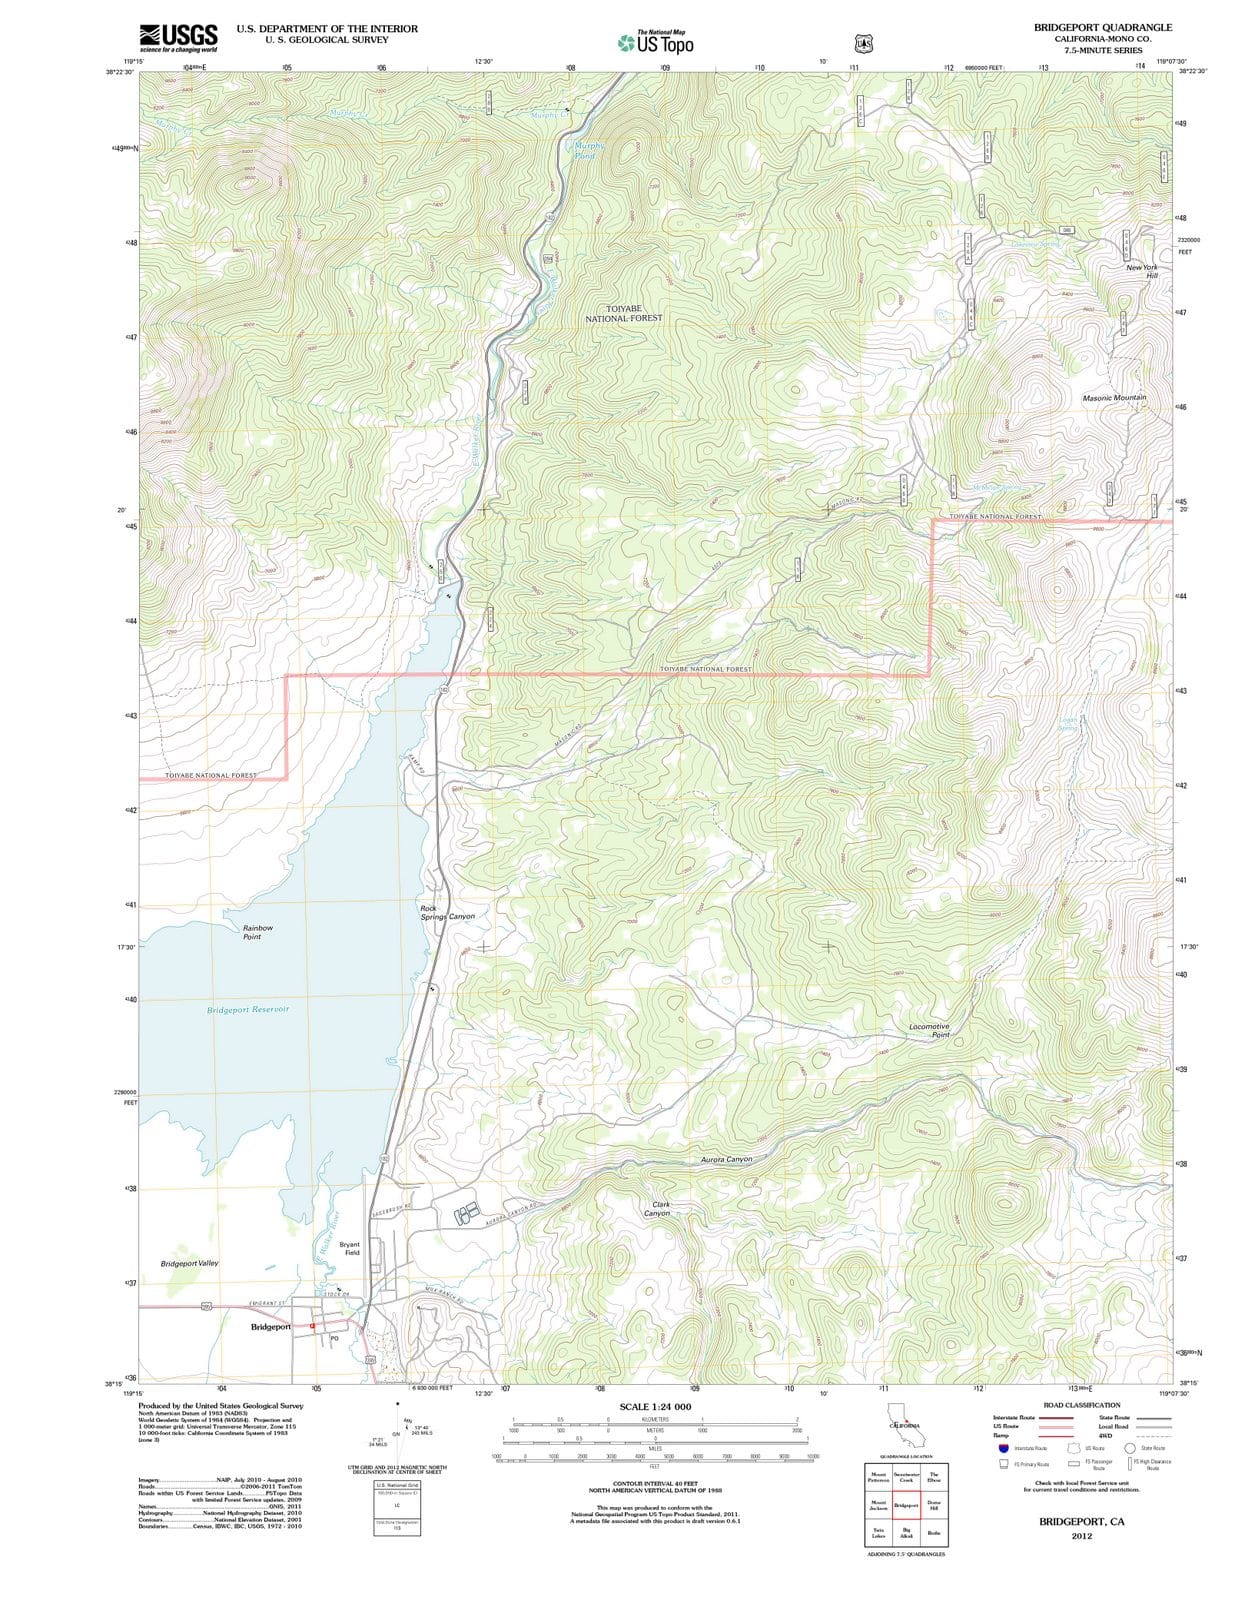 2012 Bridgeport, CA - California - USGS Topographic Map